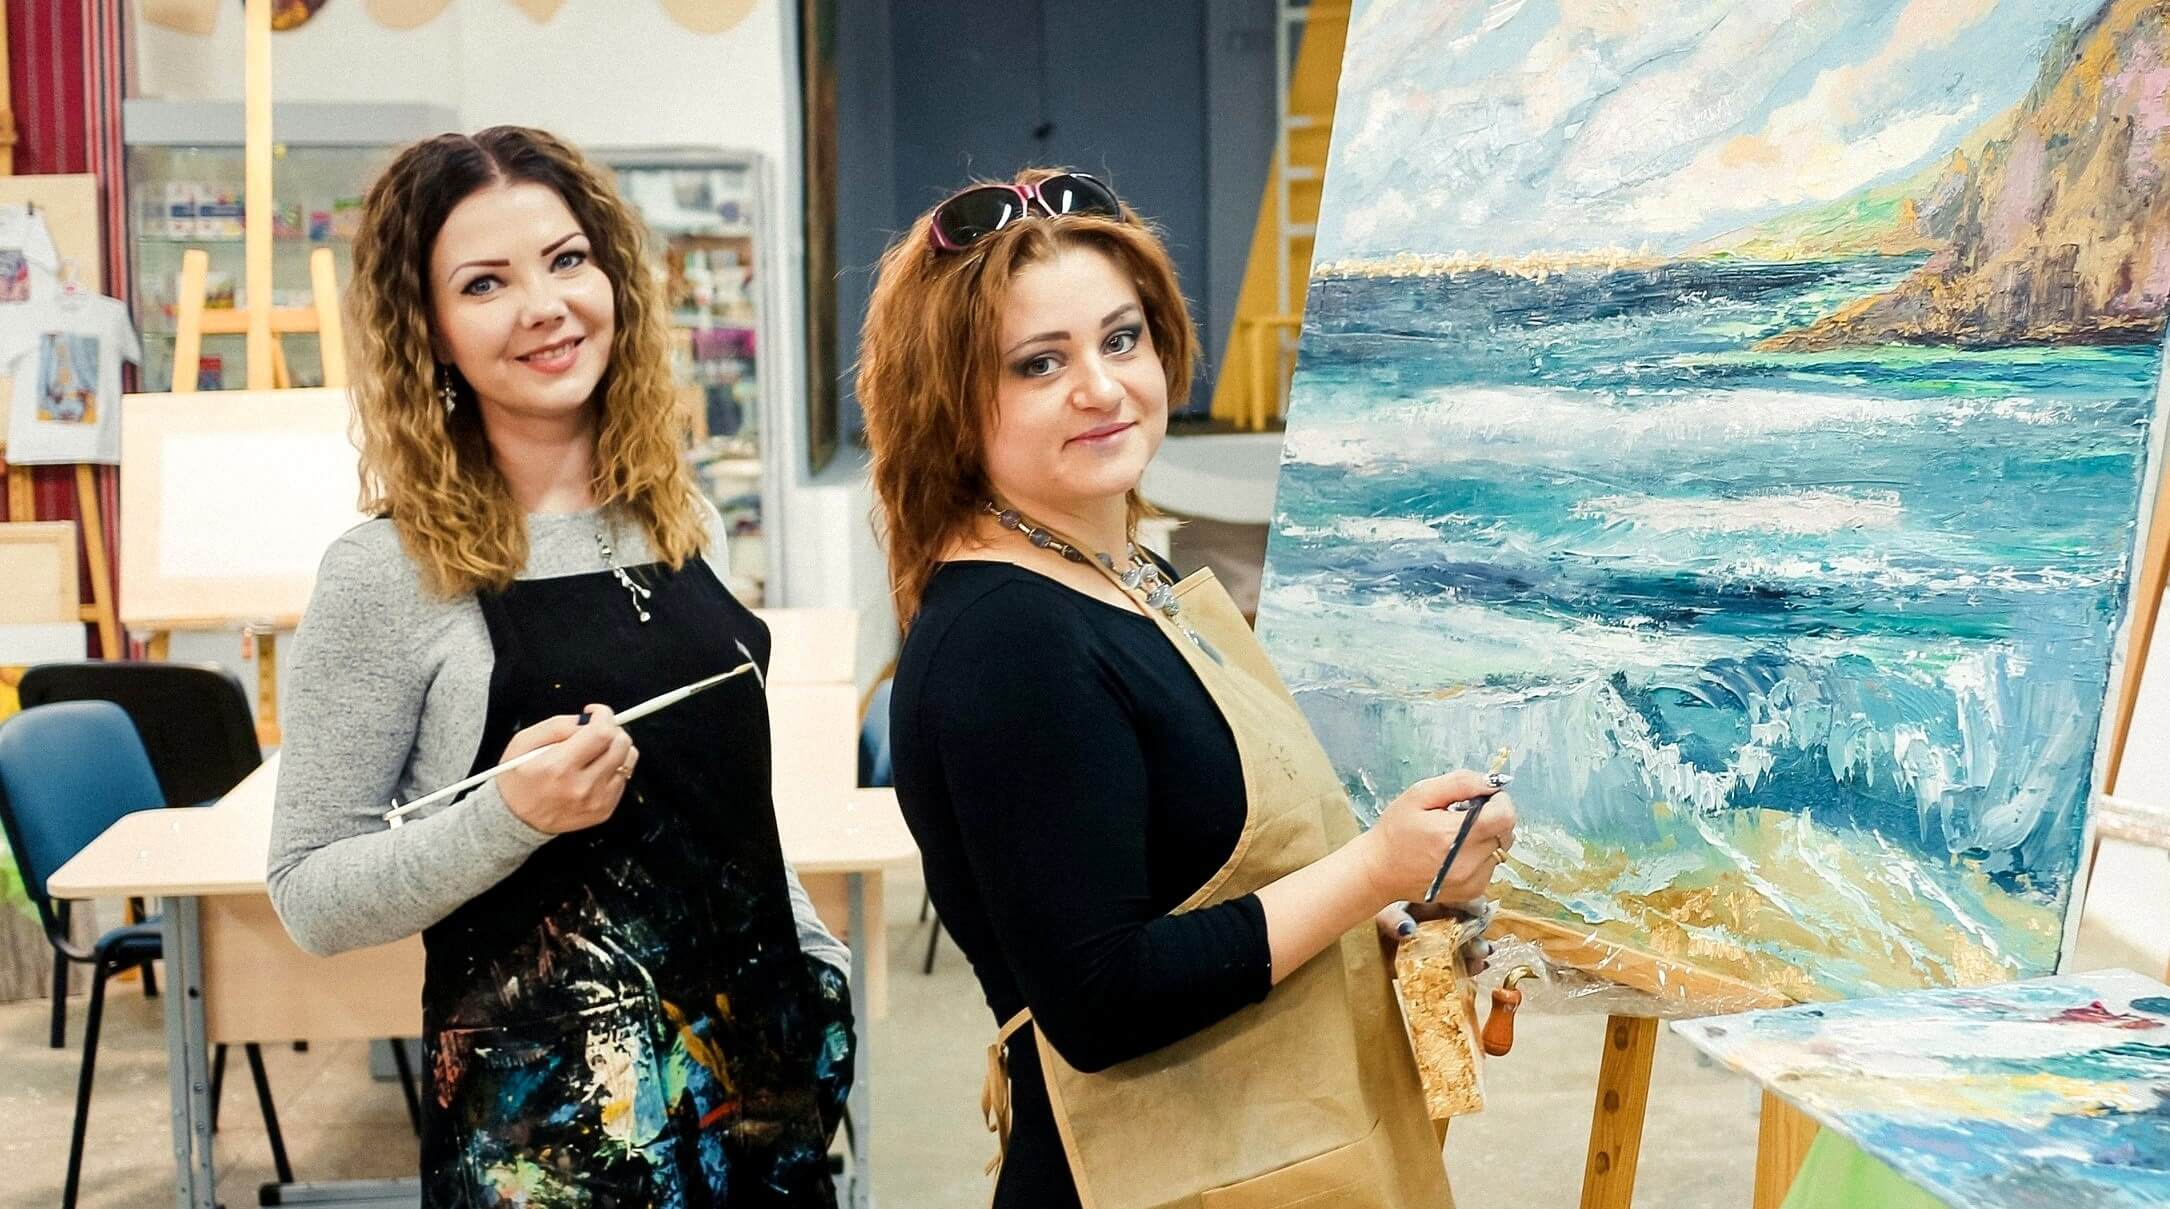 Мастер-класс по живописи маслом для двоих, Киев - Фото